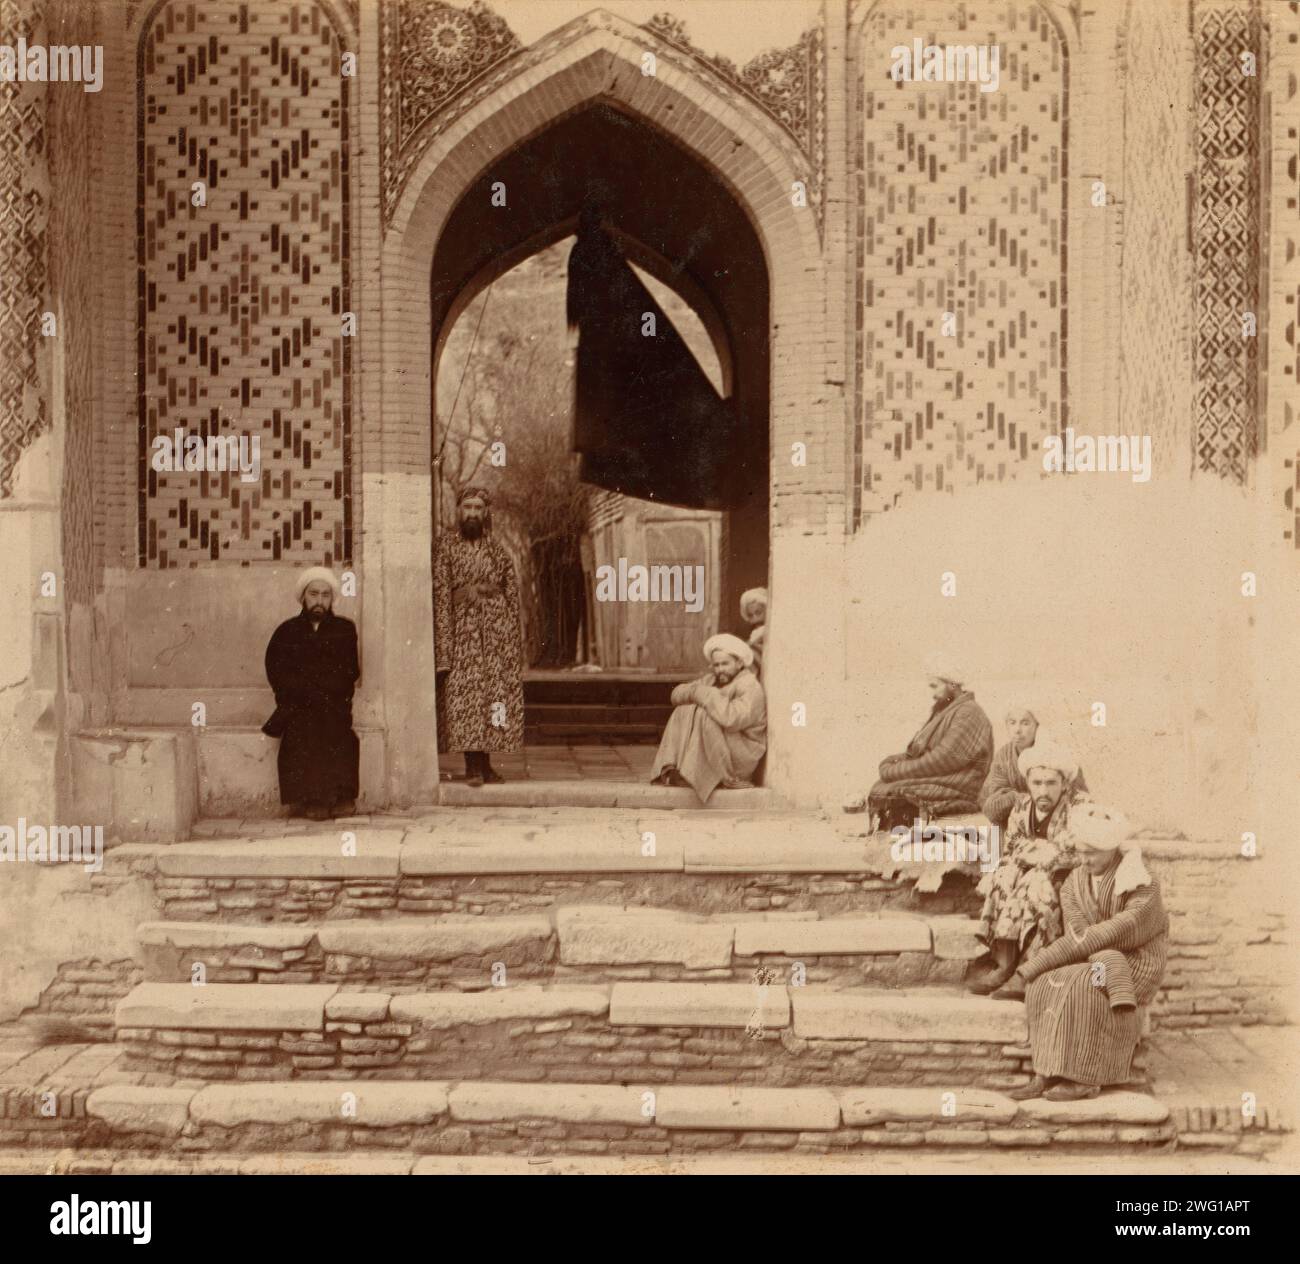 A l'entrée de Shakh-i Zindeh, Samarkand, entre 1905 et 1915. Des hommes assis debout sous une arche. Dans album : vues en Asie centrale, Empire russe, LOT 10338, no. 56. Banque D'Images